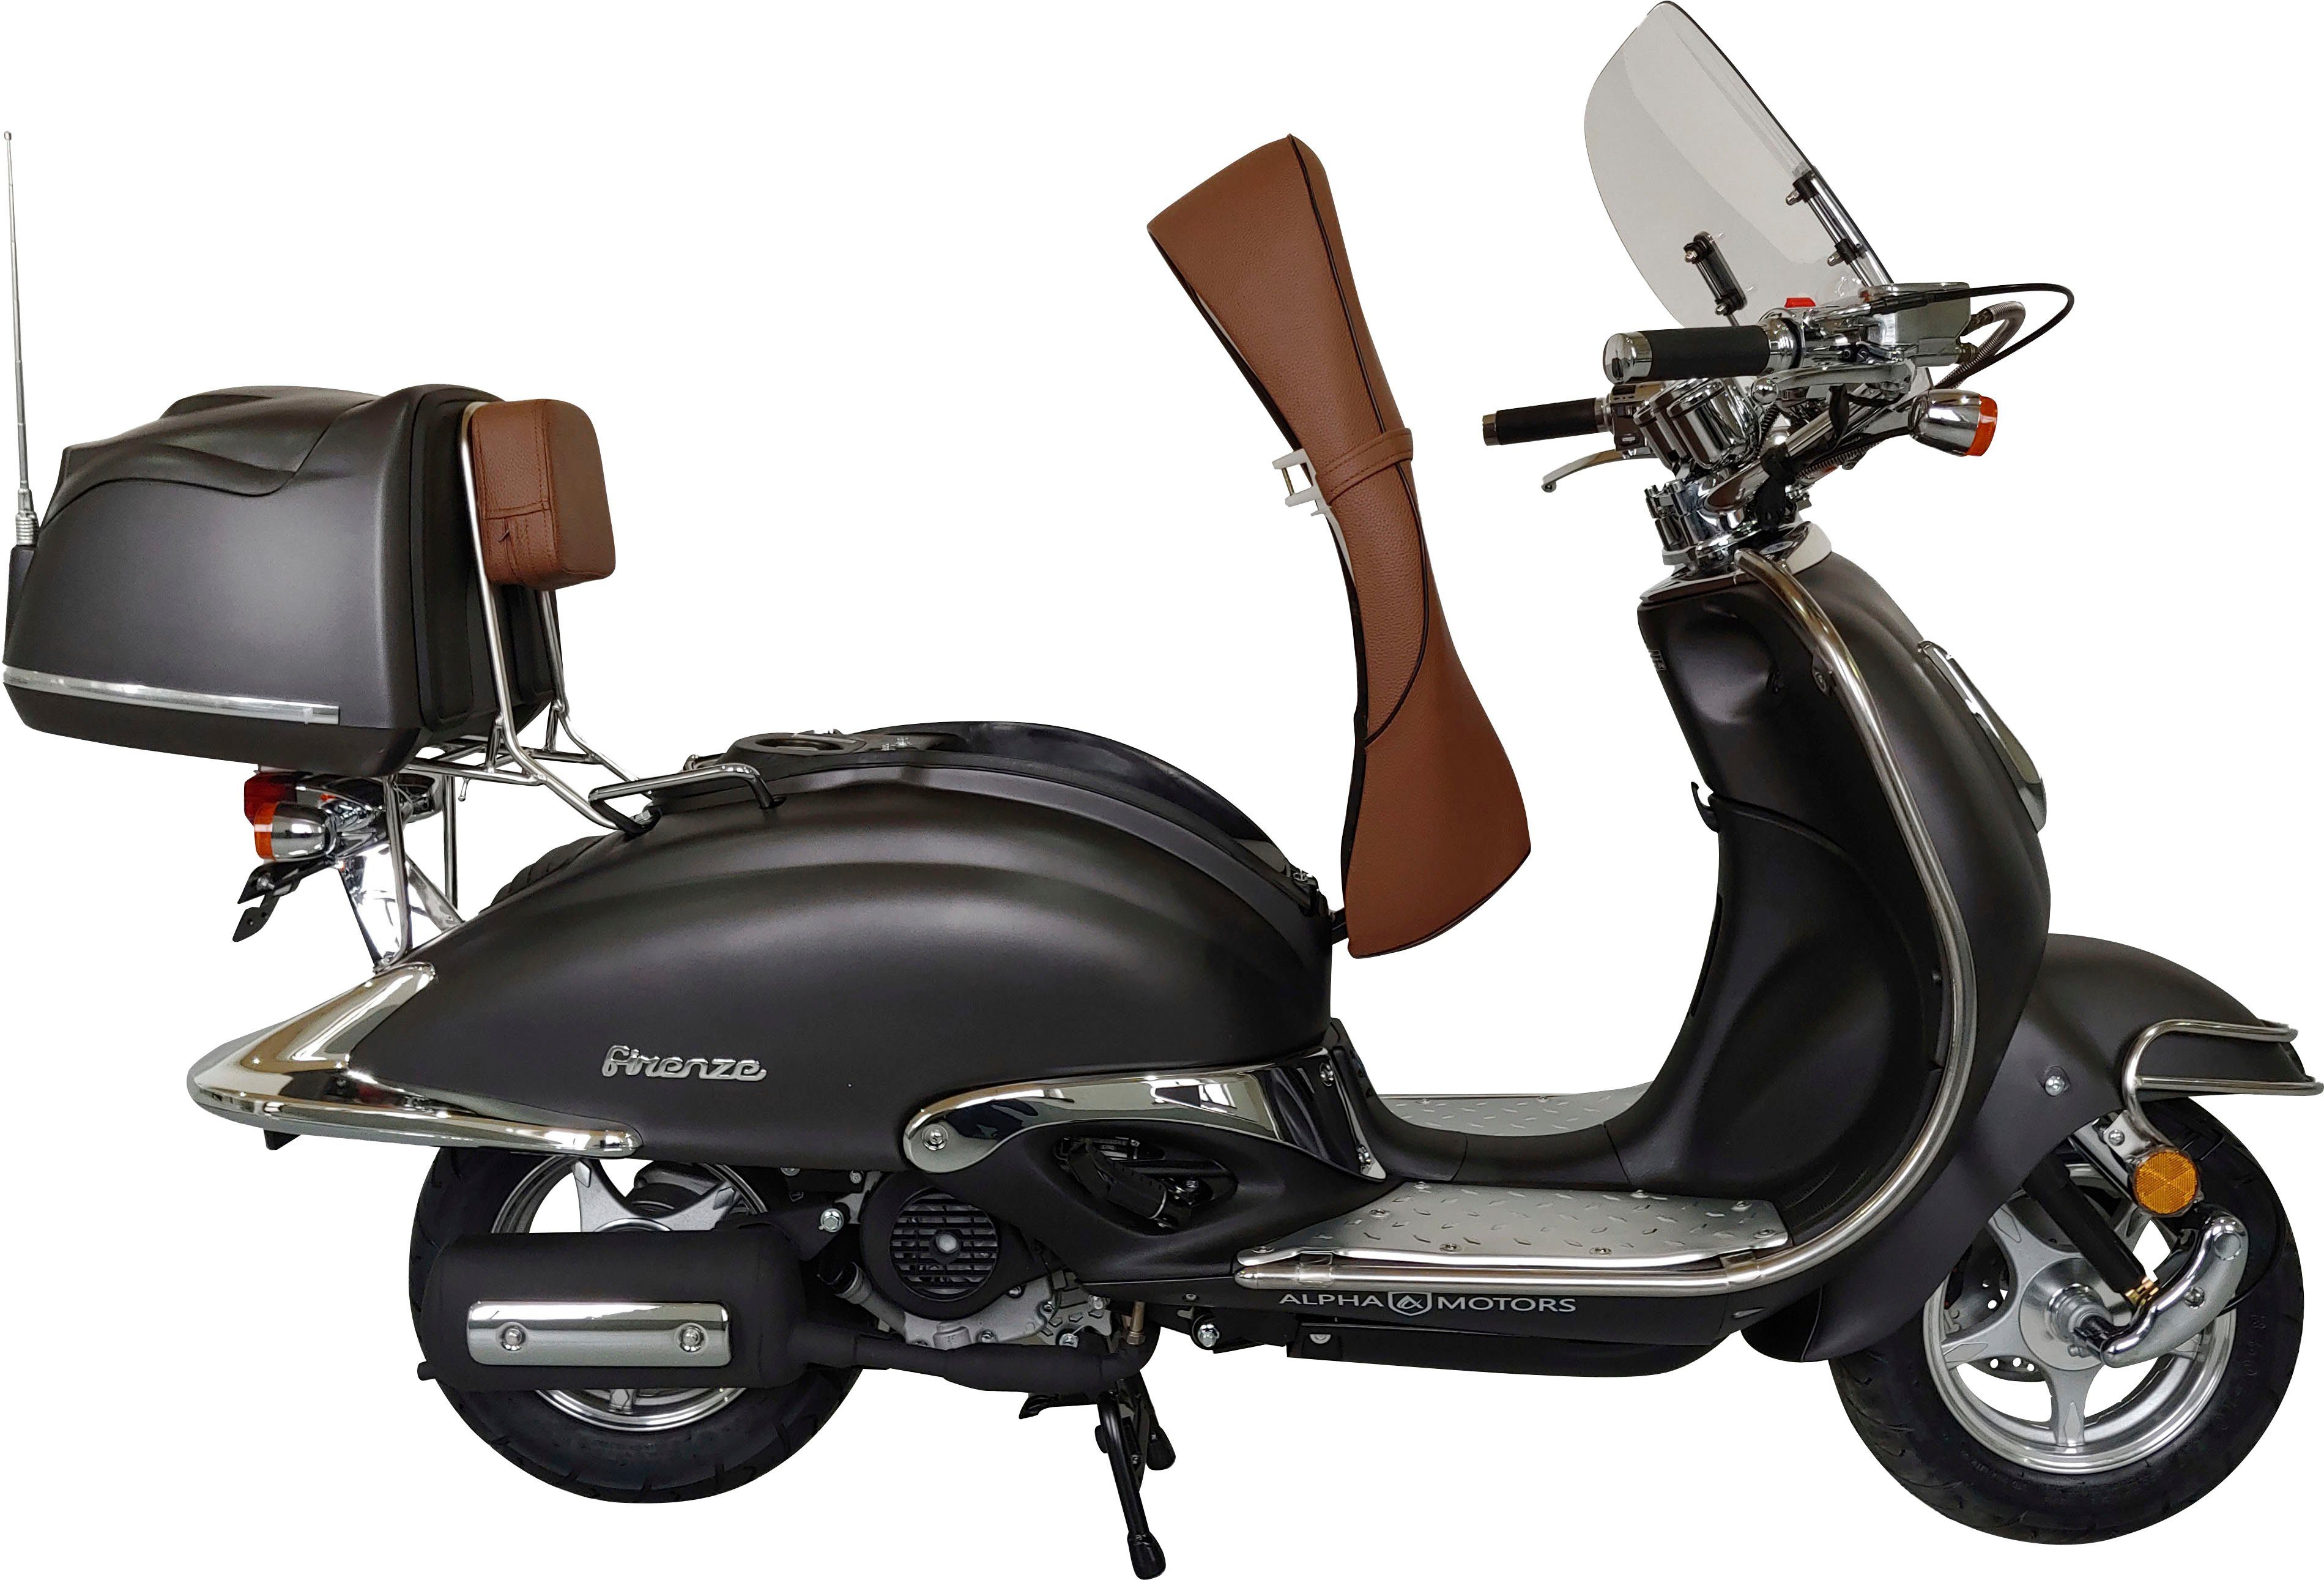 ccm, km/h, braun Firenze Euro mattschwarz Motorroller 45 Alpha 5 | 50 Motors Limited,